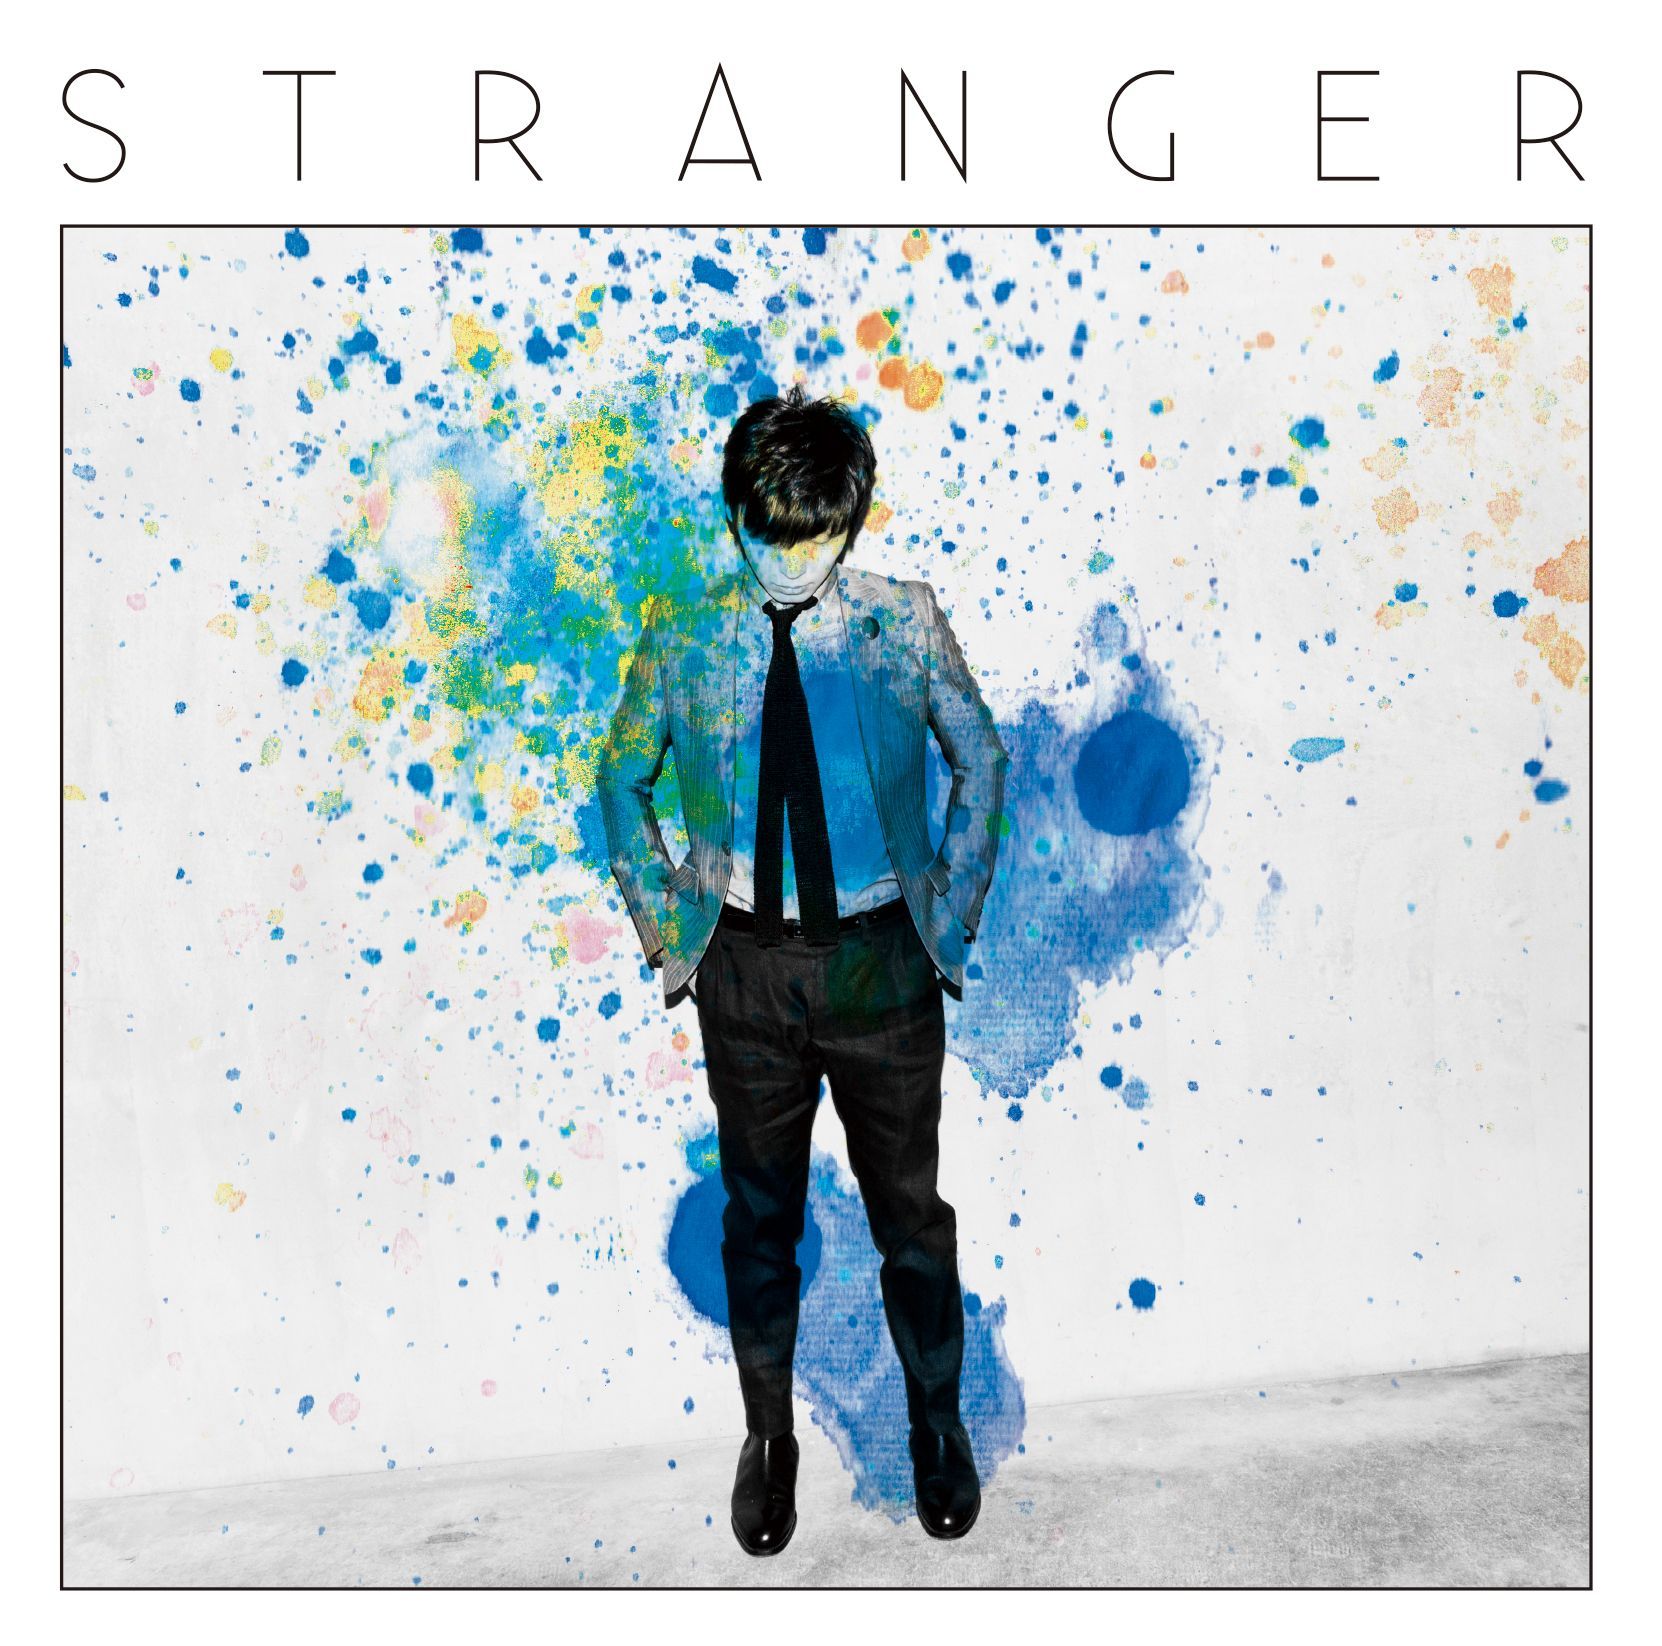 星野源 (ほしのげん) 3rdアルバム『Stranger (ストレンジャー)』(2013年5月1日発売) 高画質CDジャケット画像 (ジャケ写)